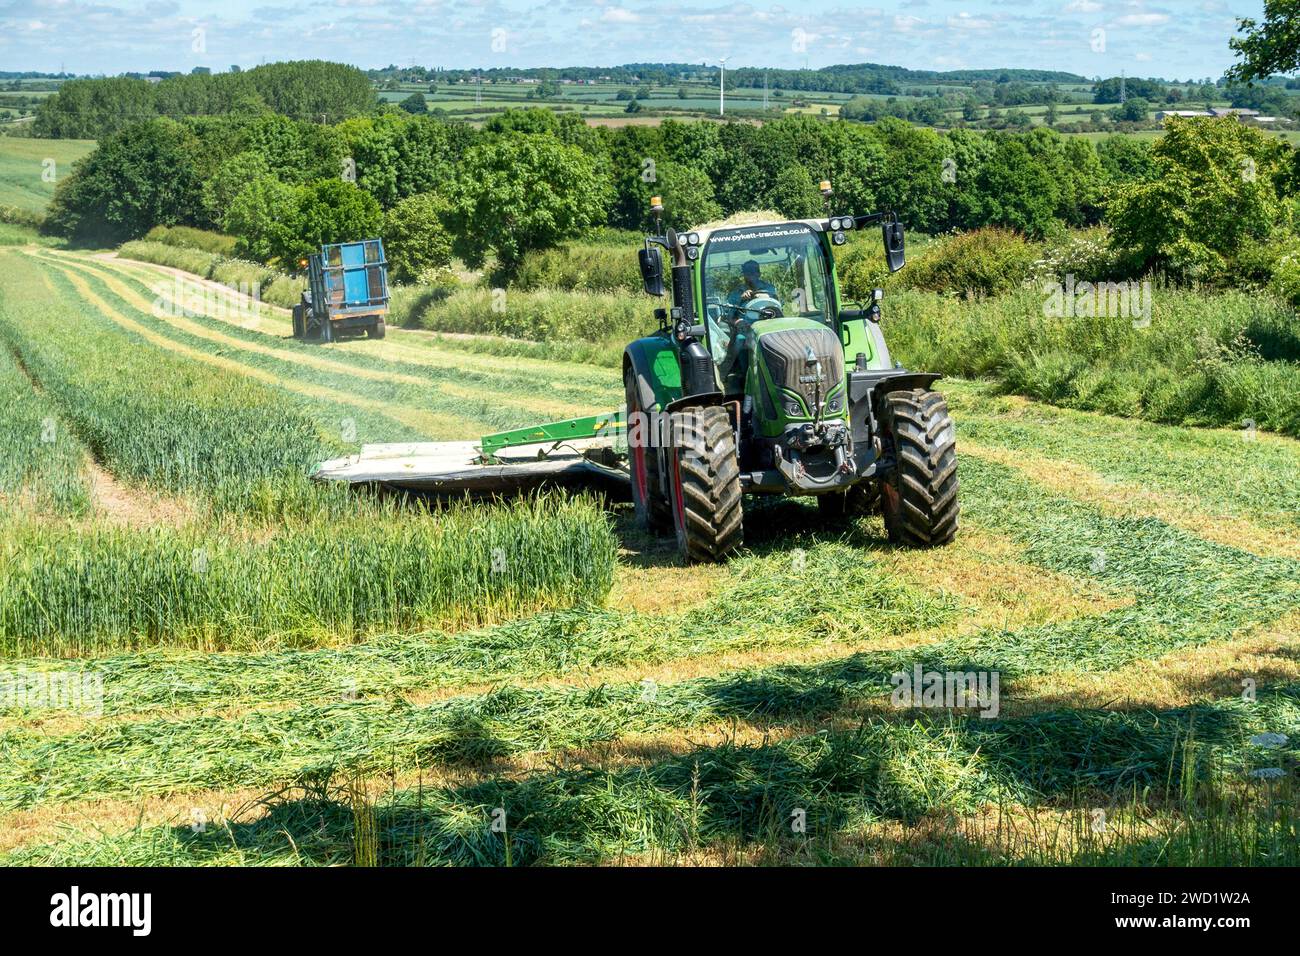 Landwirtschaftliche Traktoren Mähen, Schneiden und Sammeln von grünem Erntegut für Silage oder Futter in landwirtschaftlichen Betrieben, die an trockenen sonnigen Tagen im Juni in Leicestershire, England, Großbritannien abgelegt werden Stockfoto